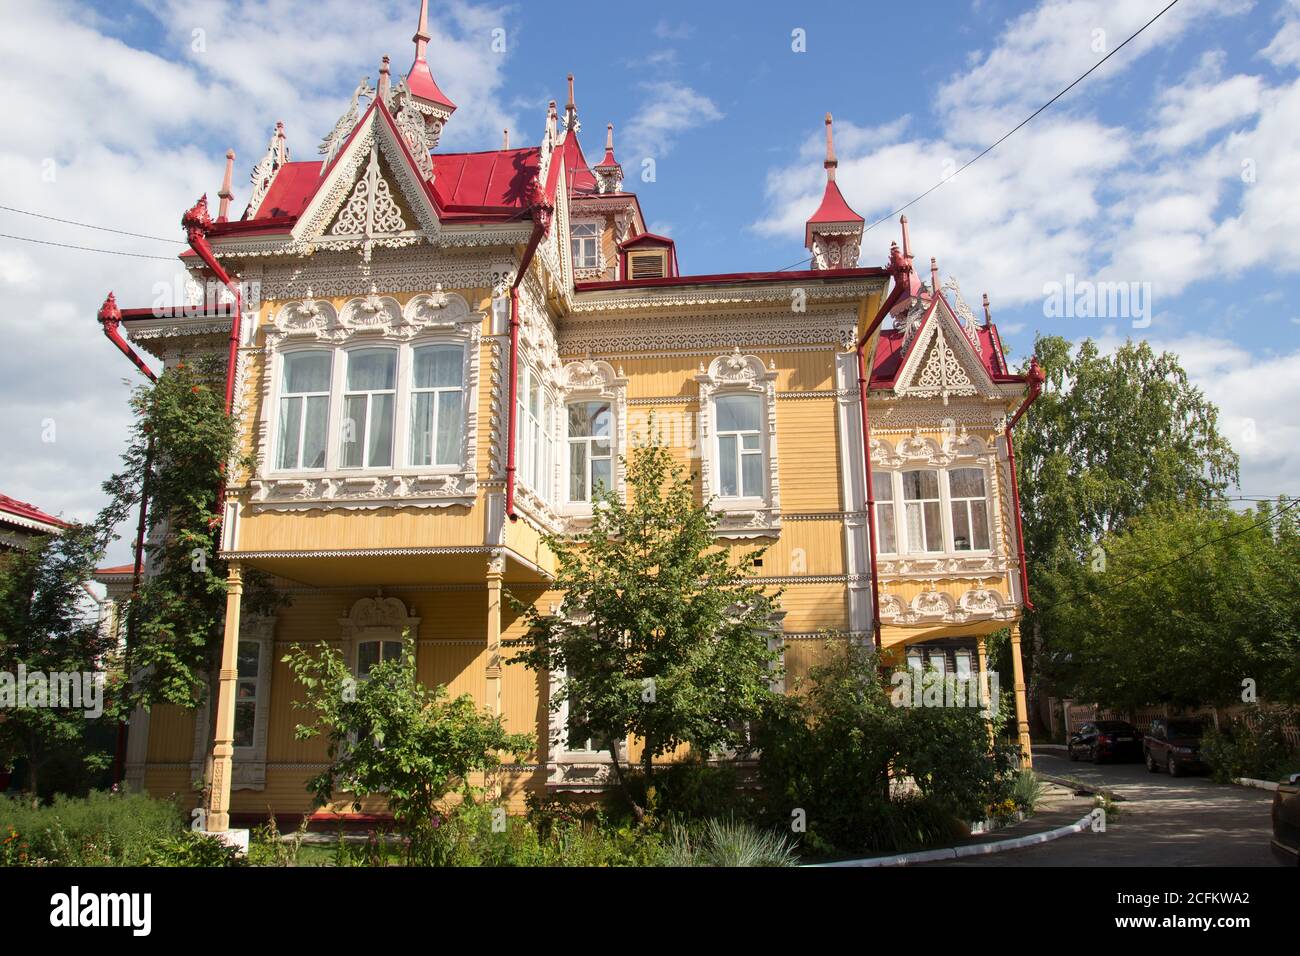 Russische Architektur. Haus mit feuervögeln, Holzhaus, Tomsk, Russland. Schöne geschnitzte Elemente der russischen nördlichen Architektur Stockfoto